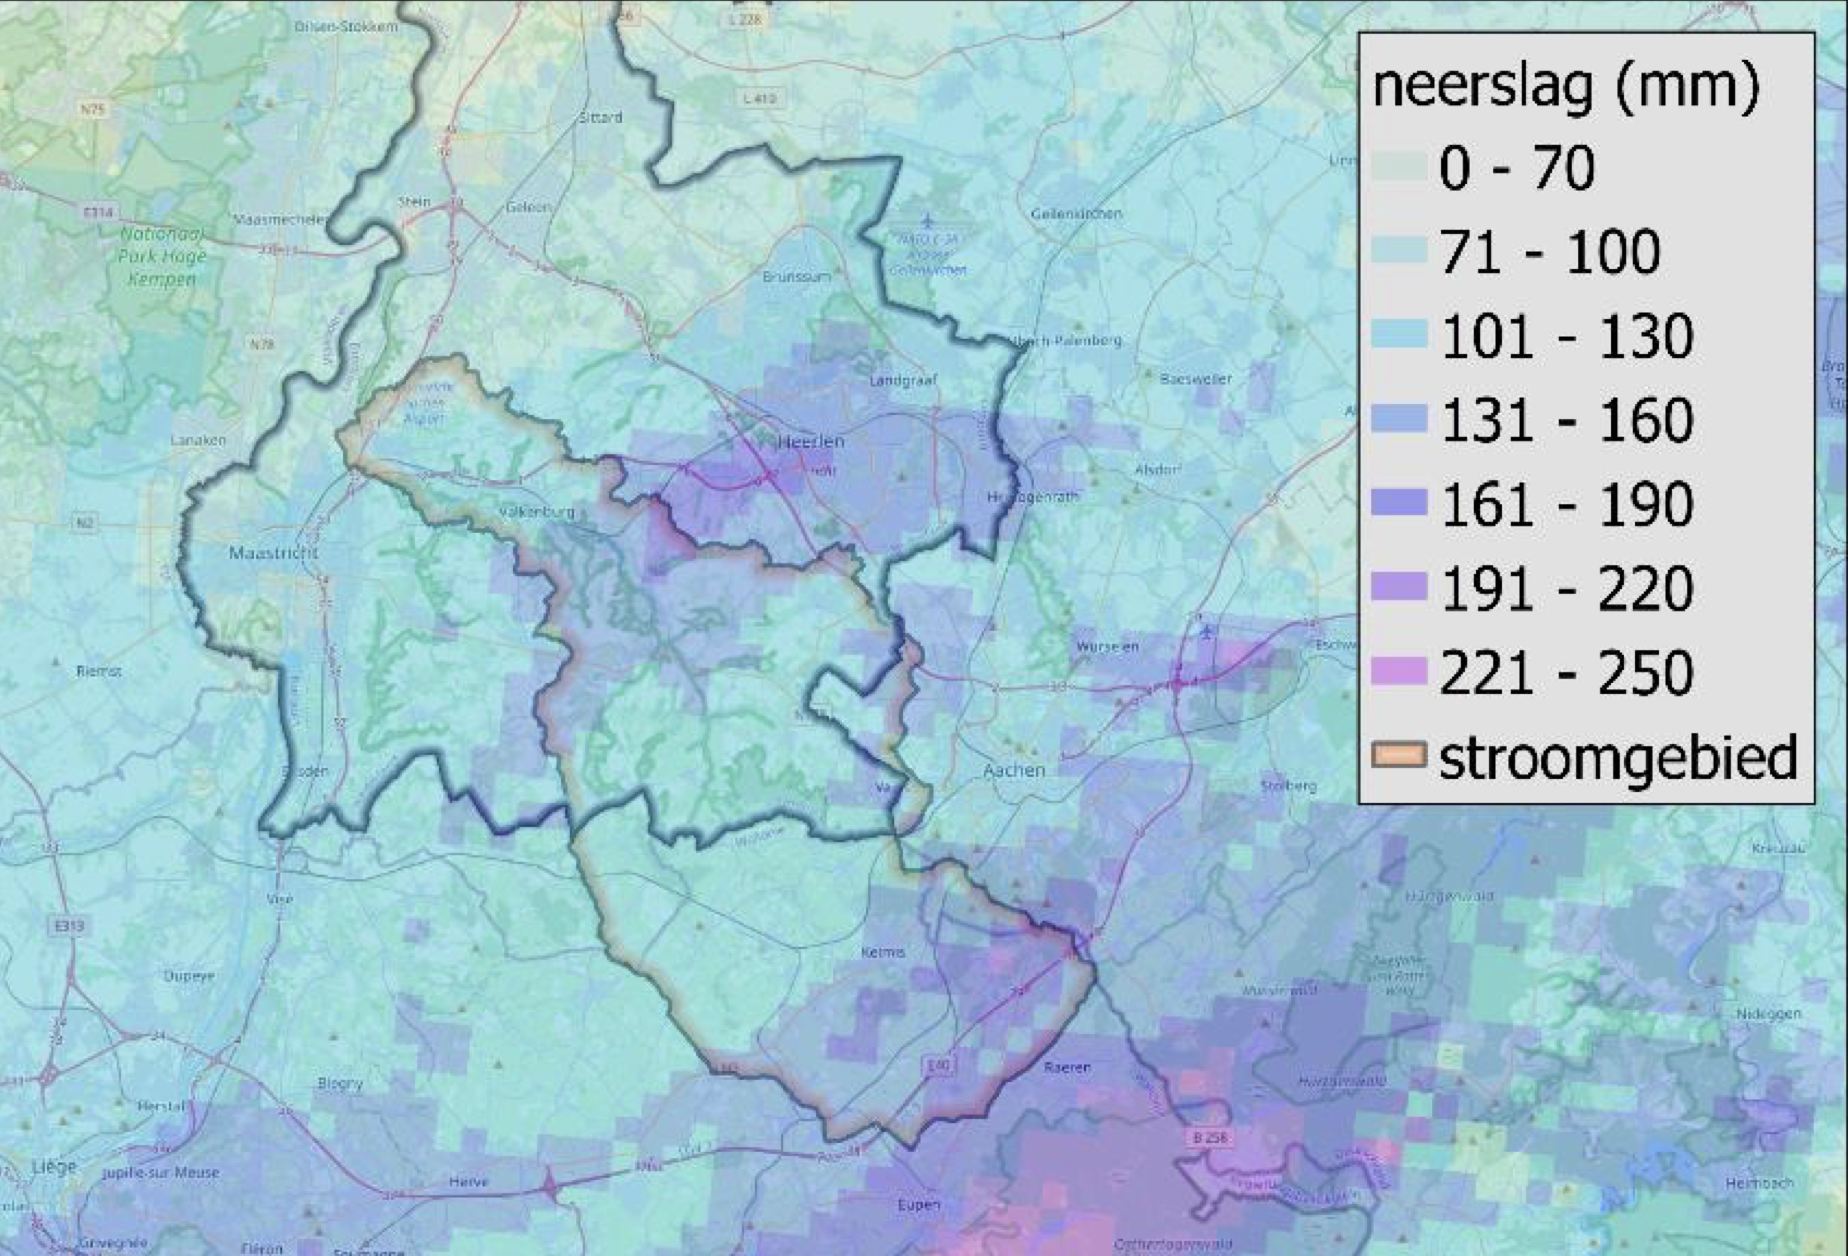 Neerslaghoeveelheden in Zuid Limburg en de regio daaromheen. Het stroomgebied van de Geul is gemarkeerd. Uit door het KNMI gecorrigeerde radar-data (Bron: Deltares)